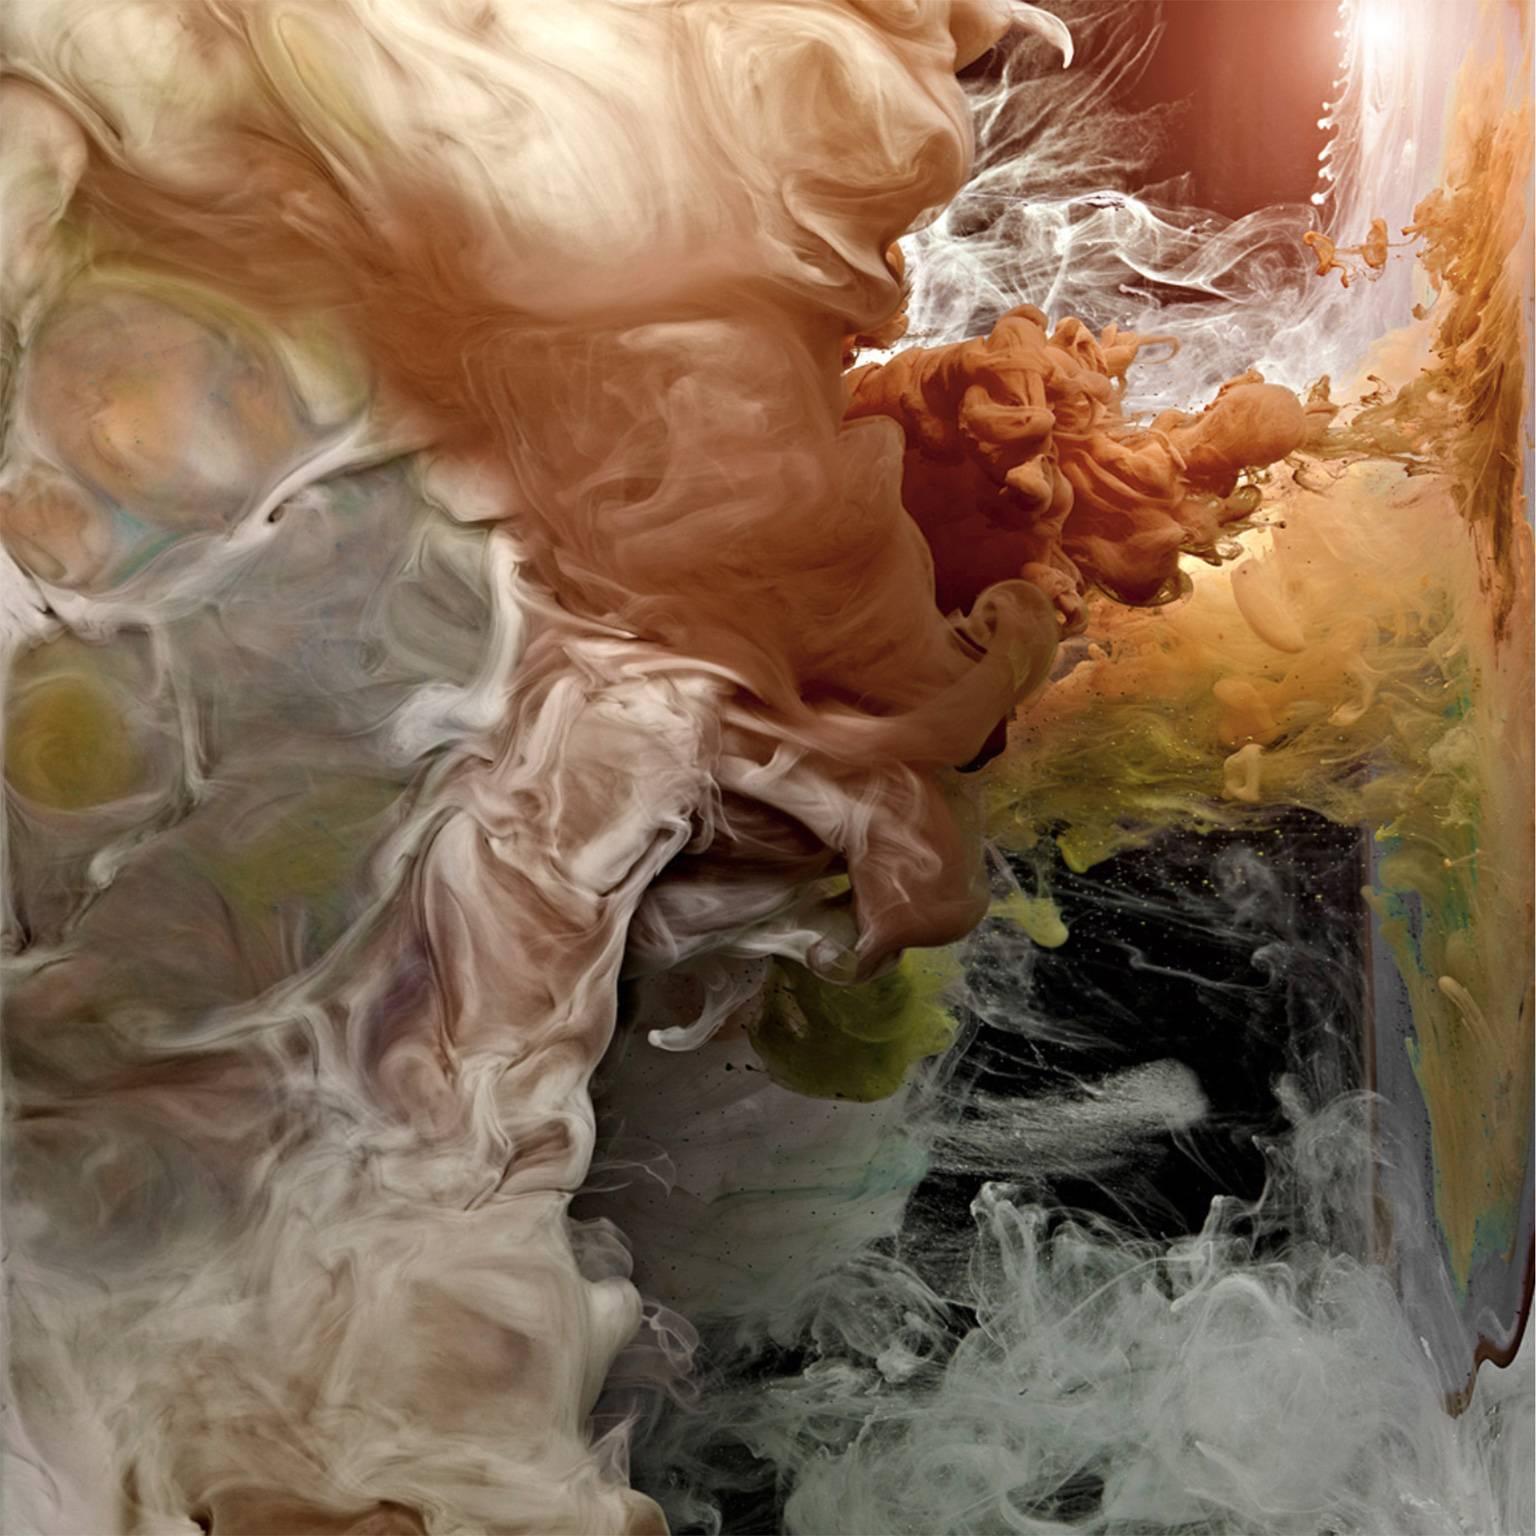 Abstract Print Christian Stoll - Hemisphere I (encadrée) - grande photographie de paysages de nuages liquides abstraits dans l'eau